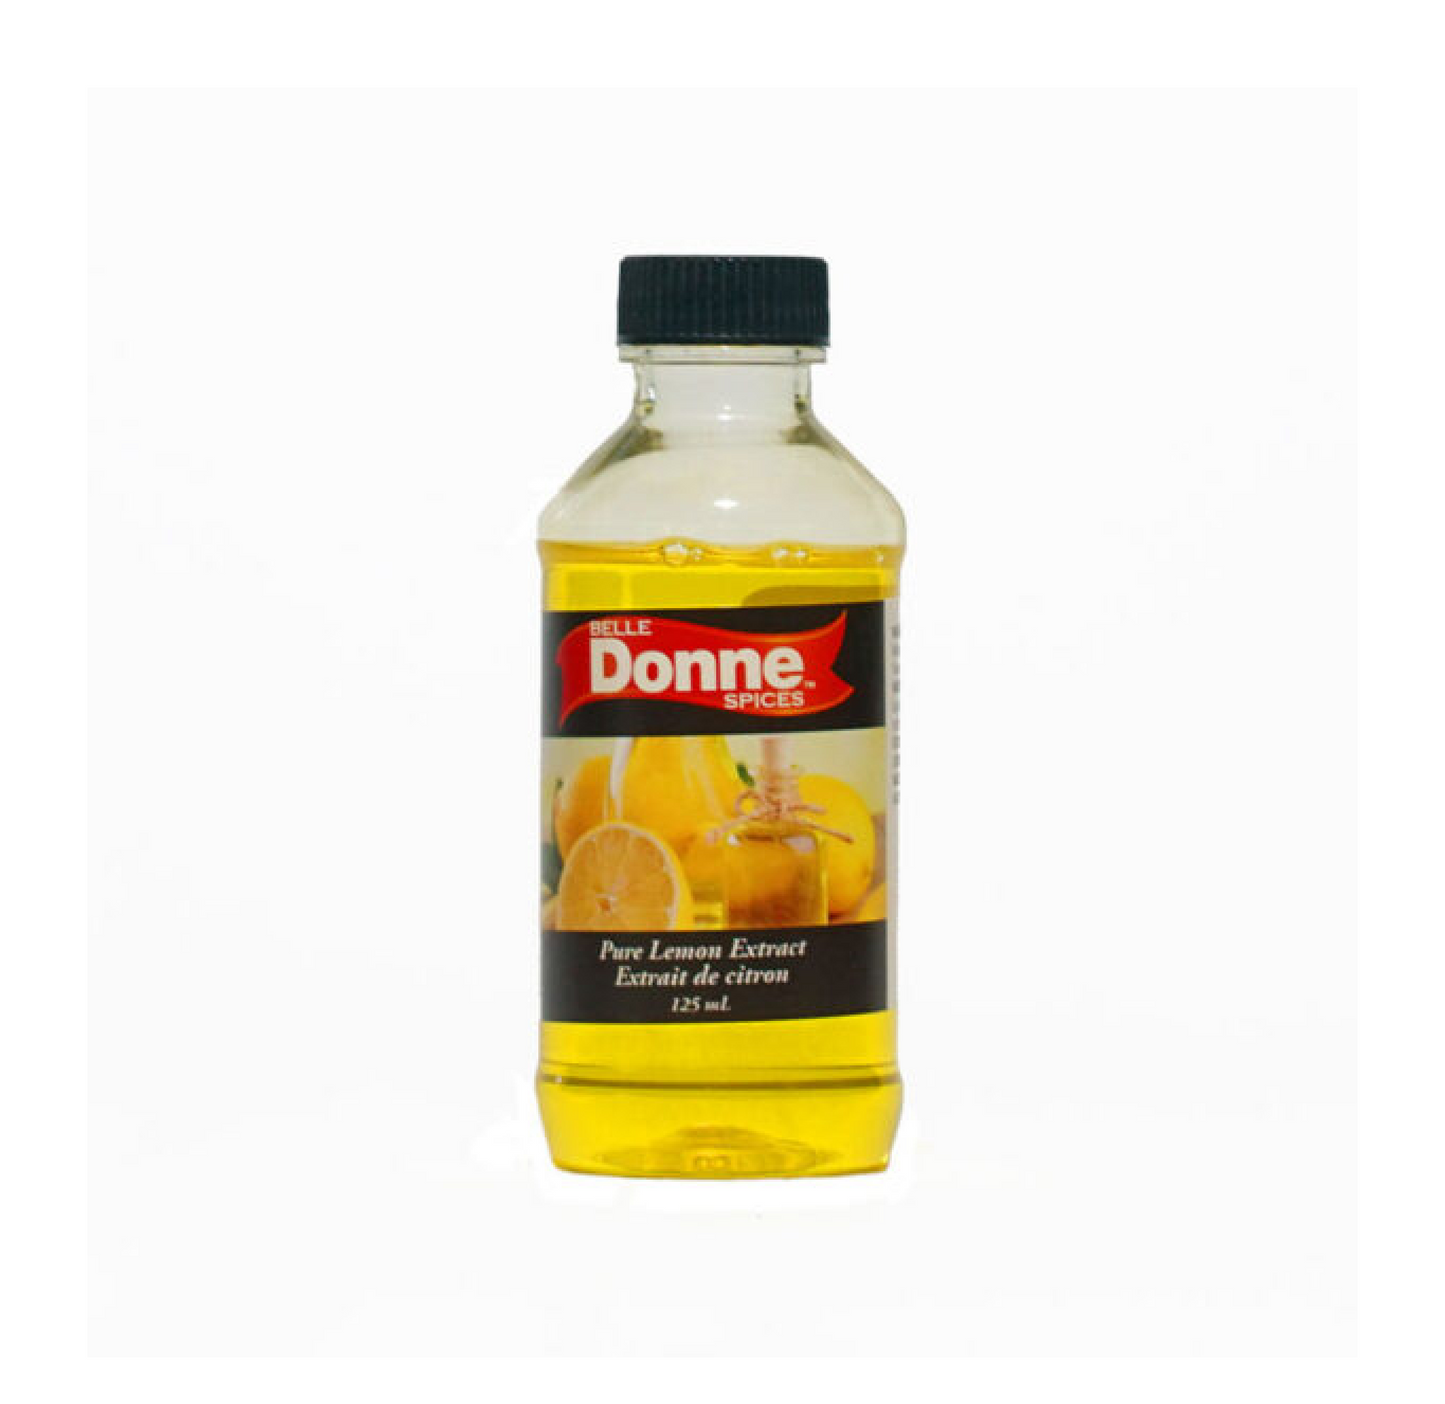 Belle Donne Pure Lemon Extract 125g